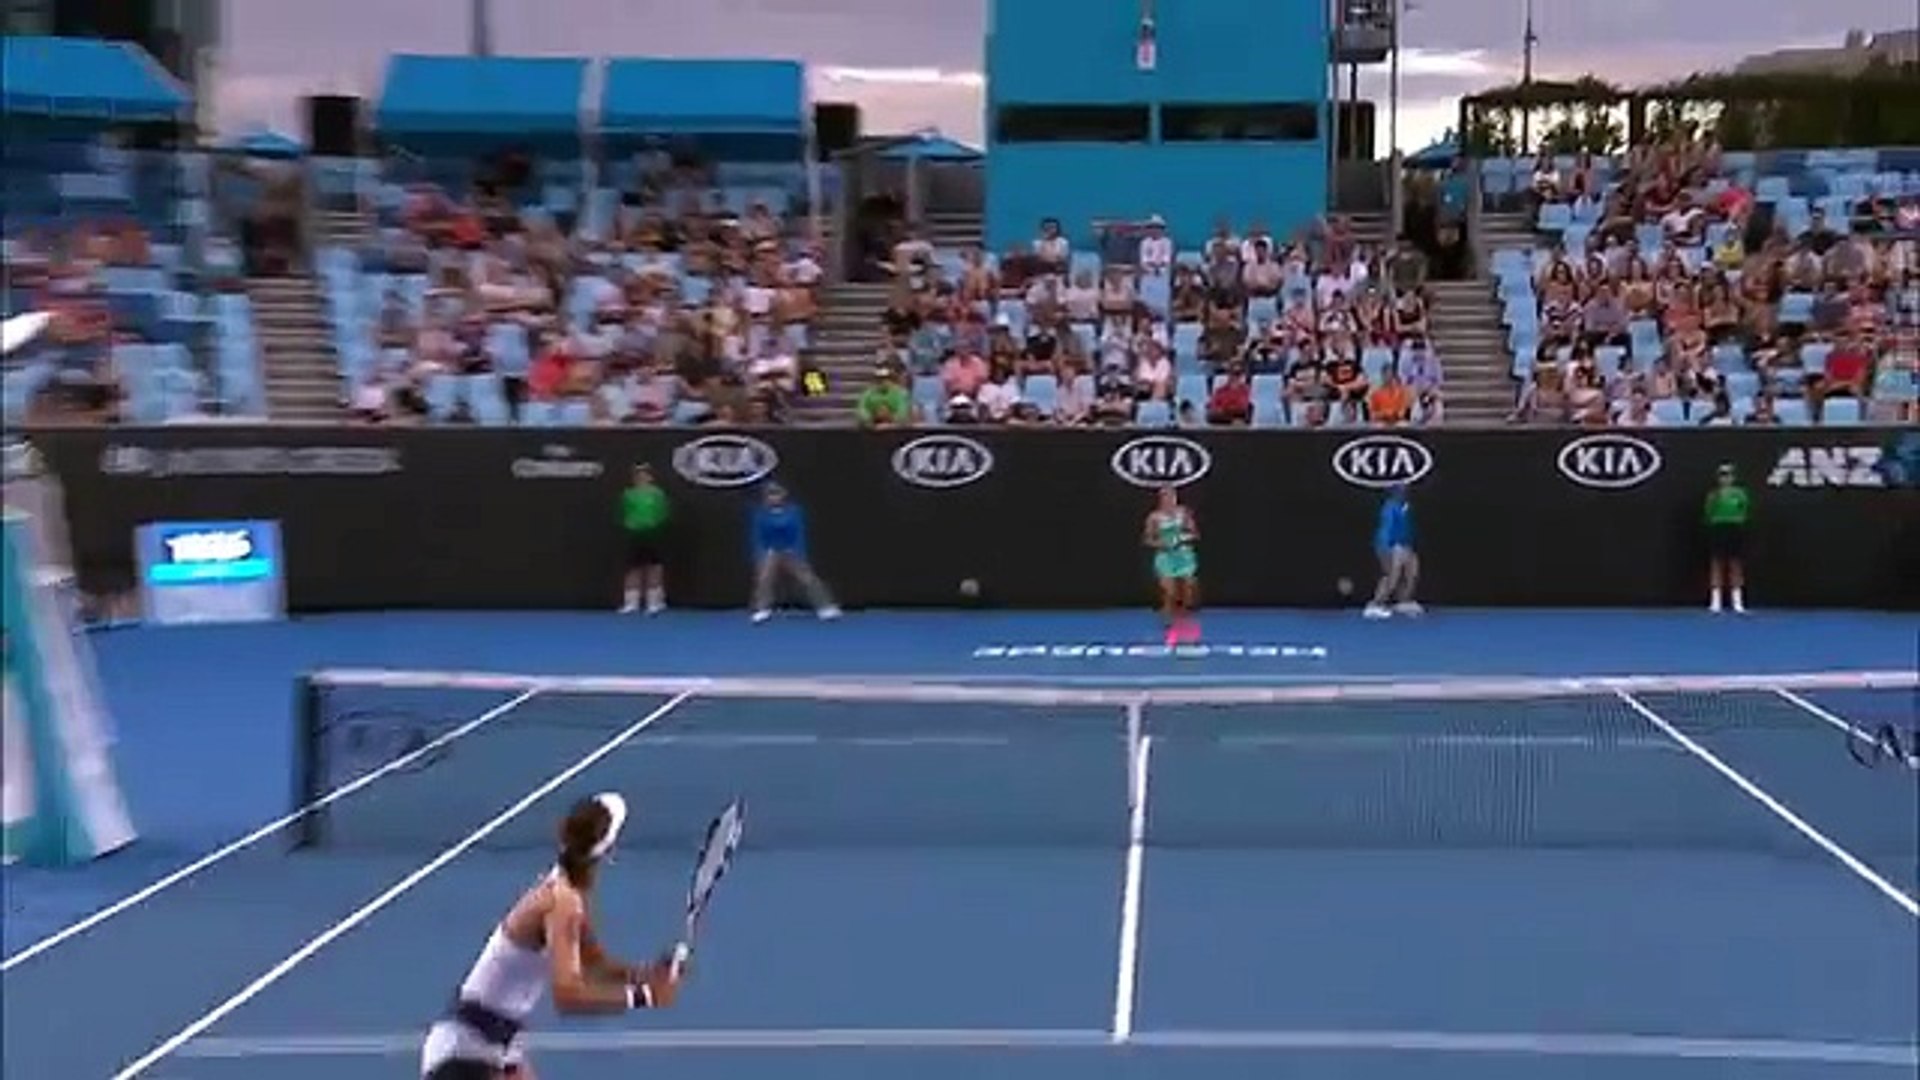 Strycova v Kuhlichkova highlights (1R) Australian Open 2017 (2) – Видео  Dailymotion